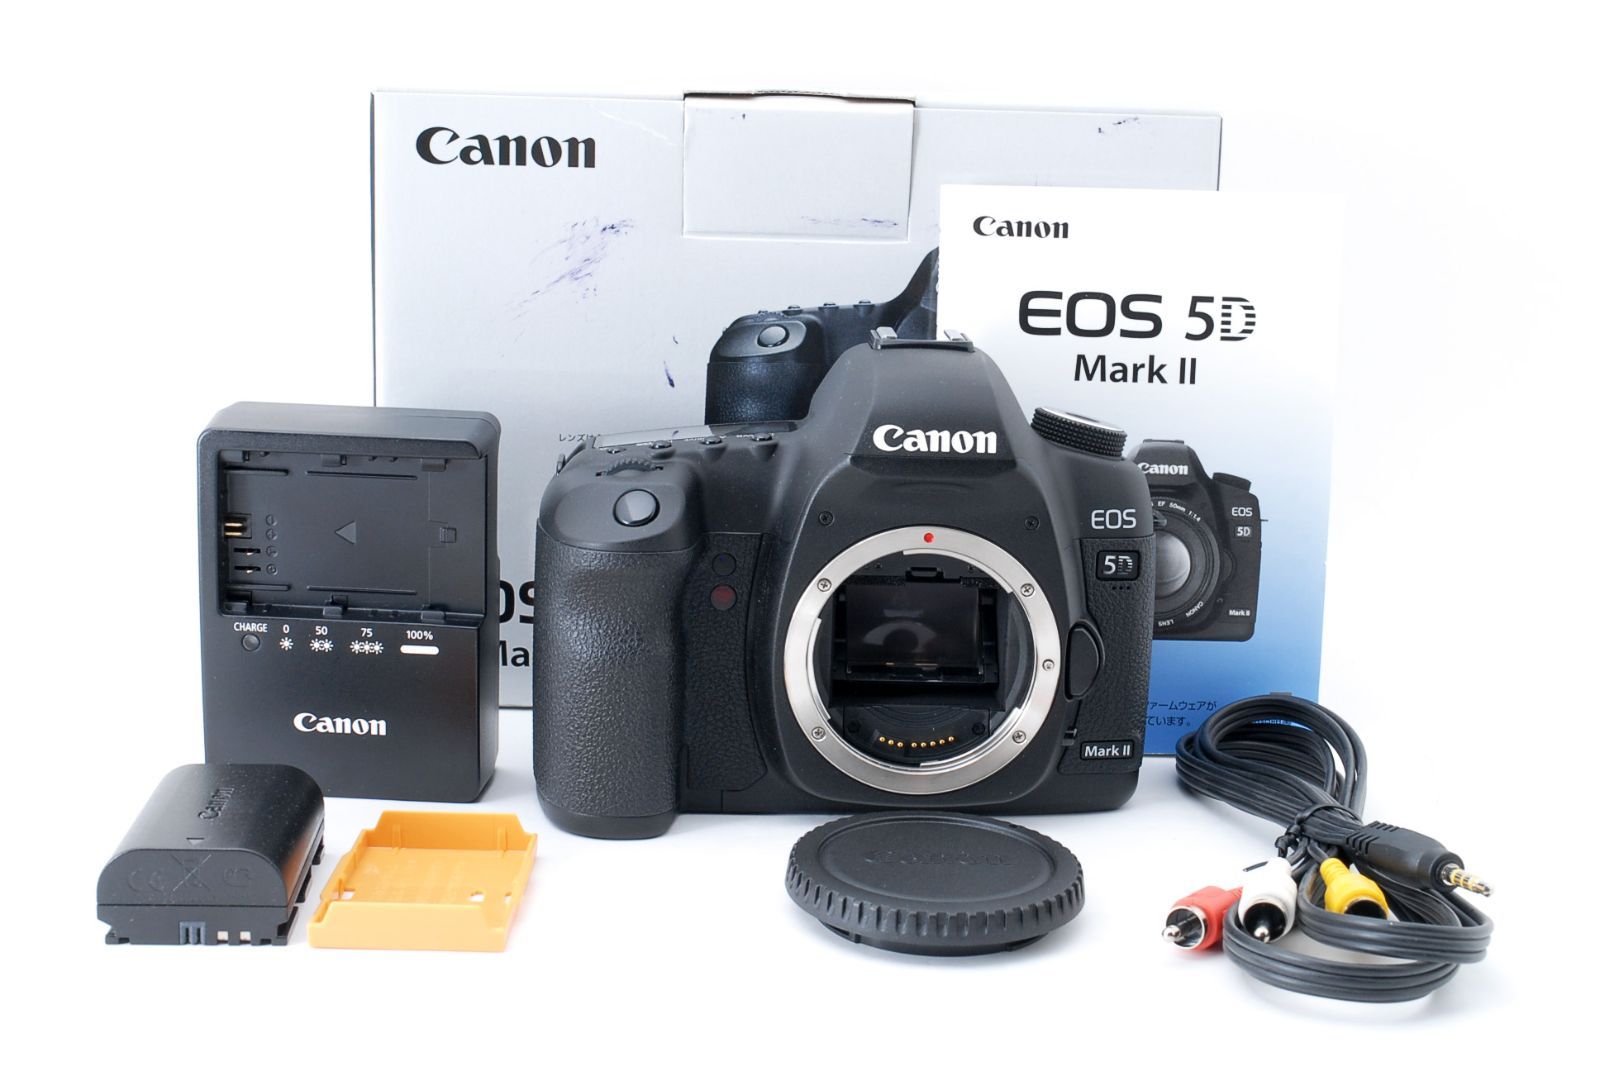 キャノン Canon イオス EOS 5D Mark II 本体+付属品 - メルカリ